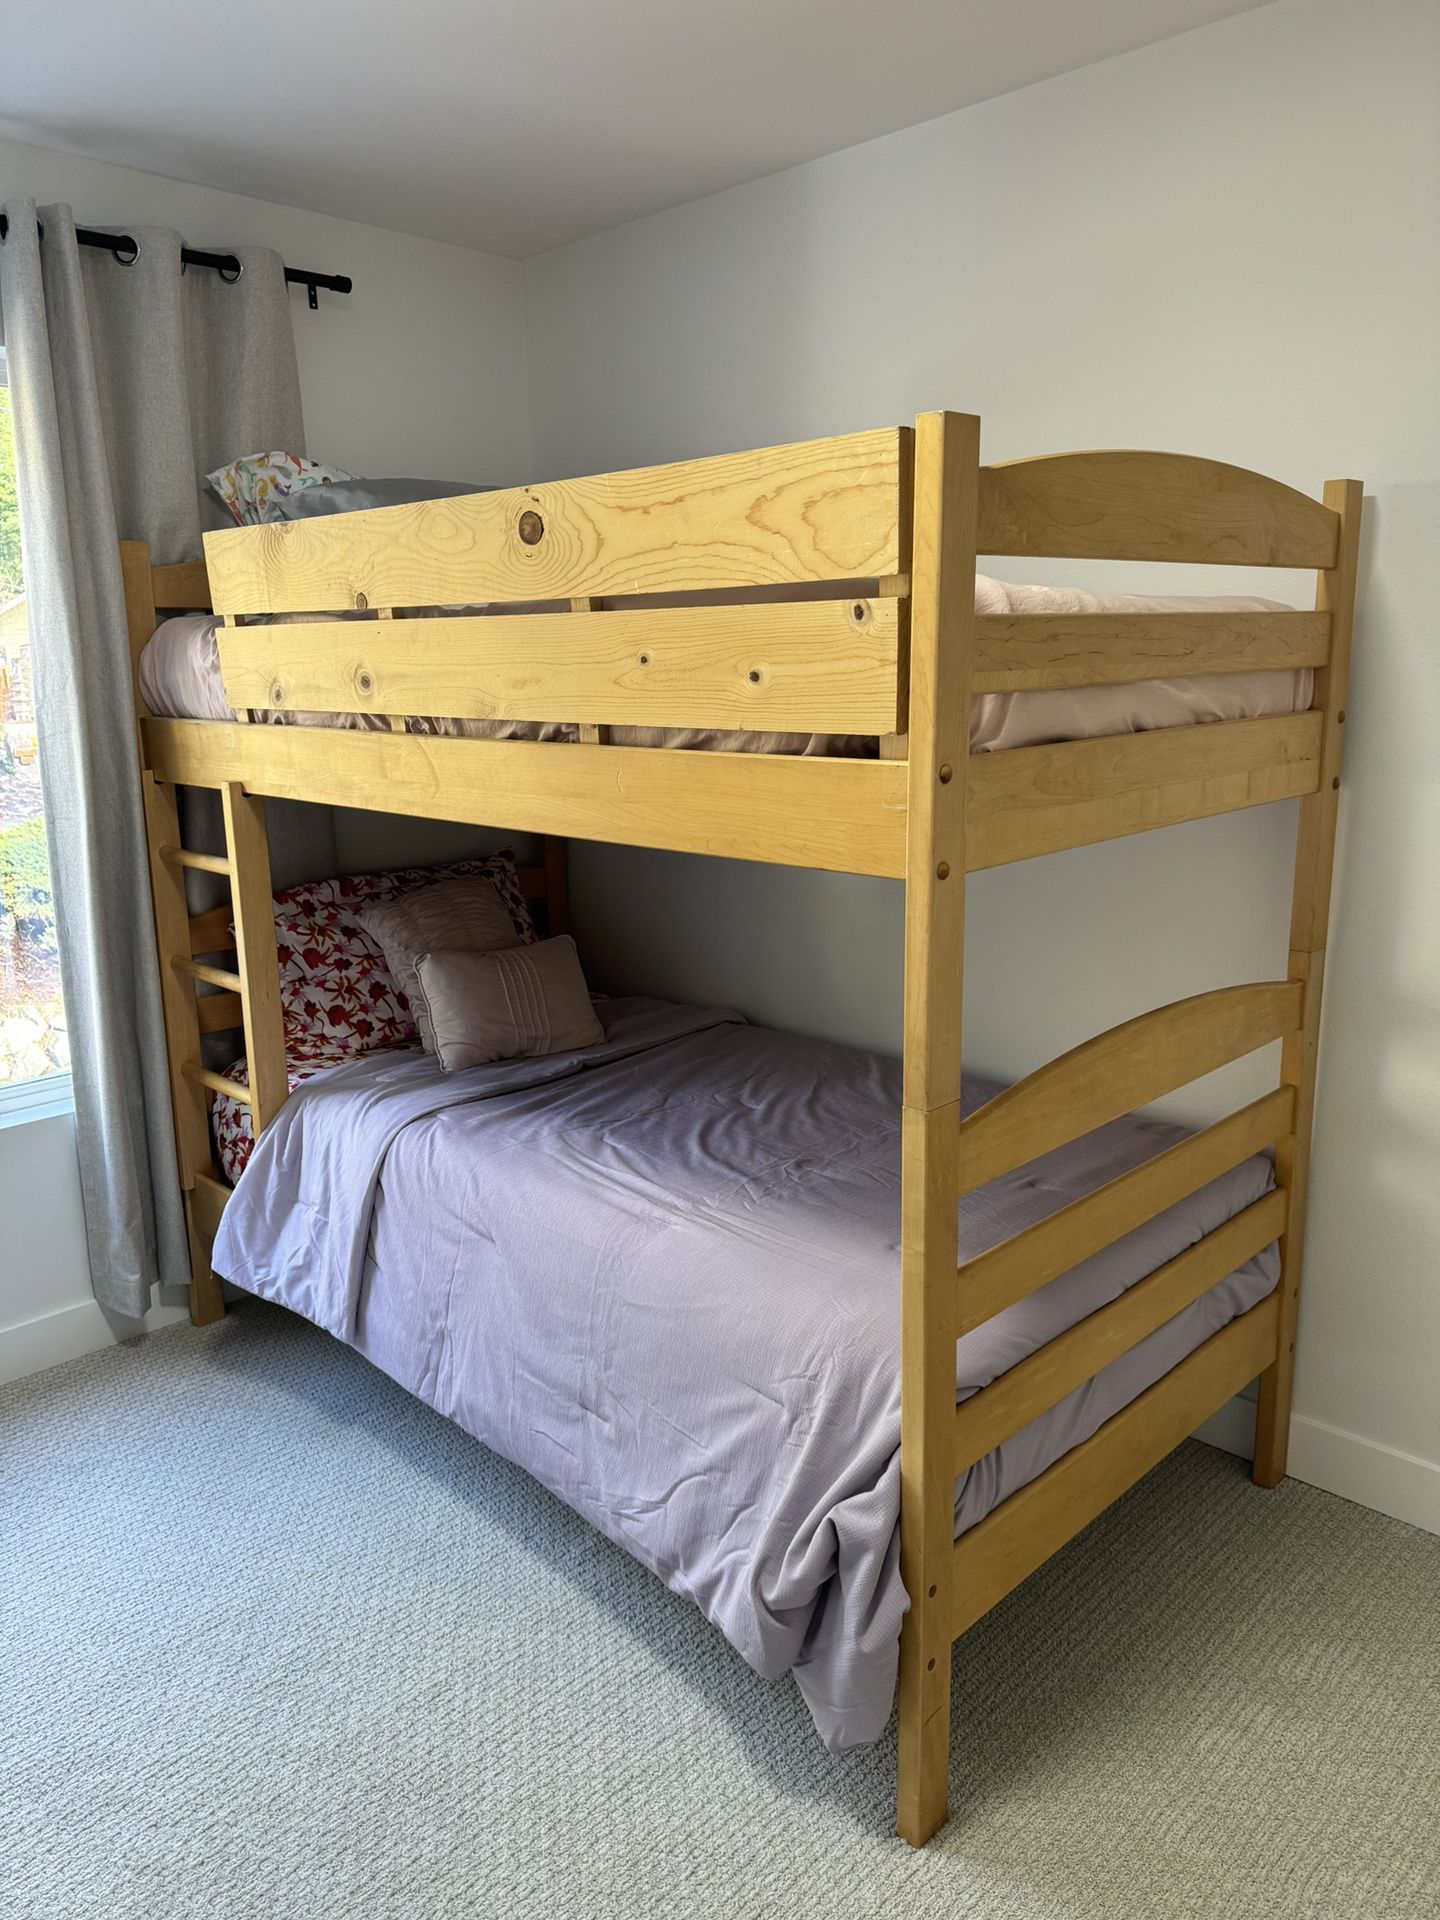 Solid Wood Kids Bedroom Furniture - Bunk Beds, Dresser, Desk